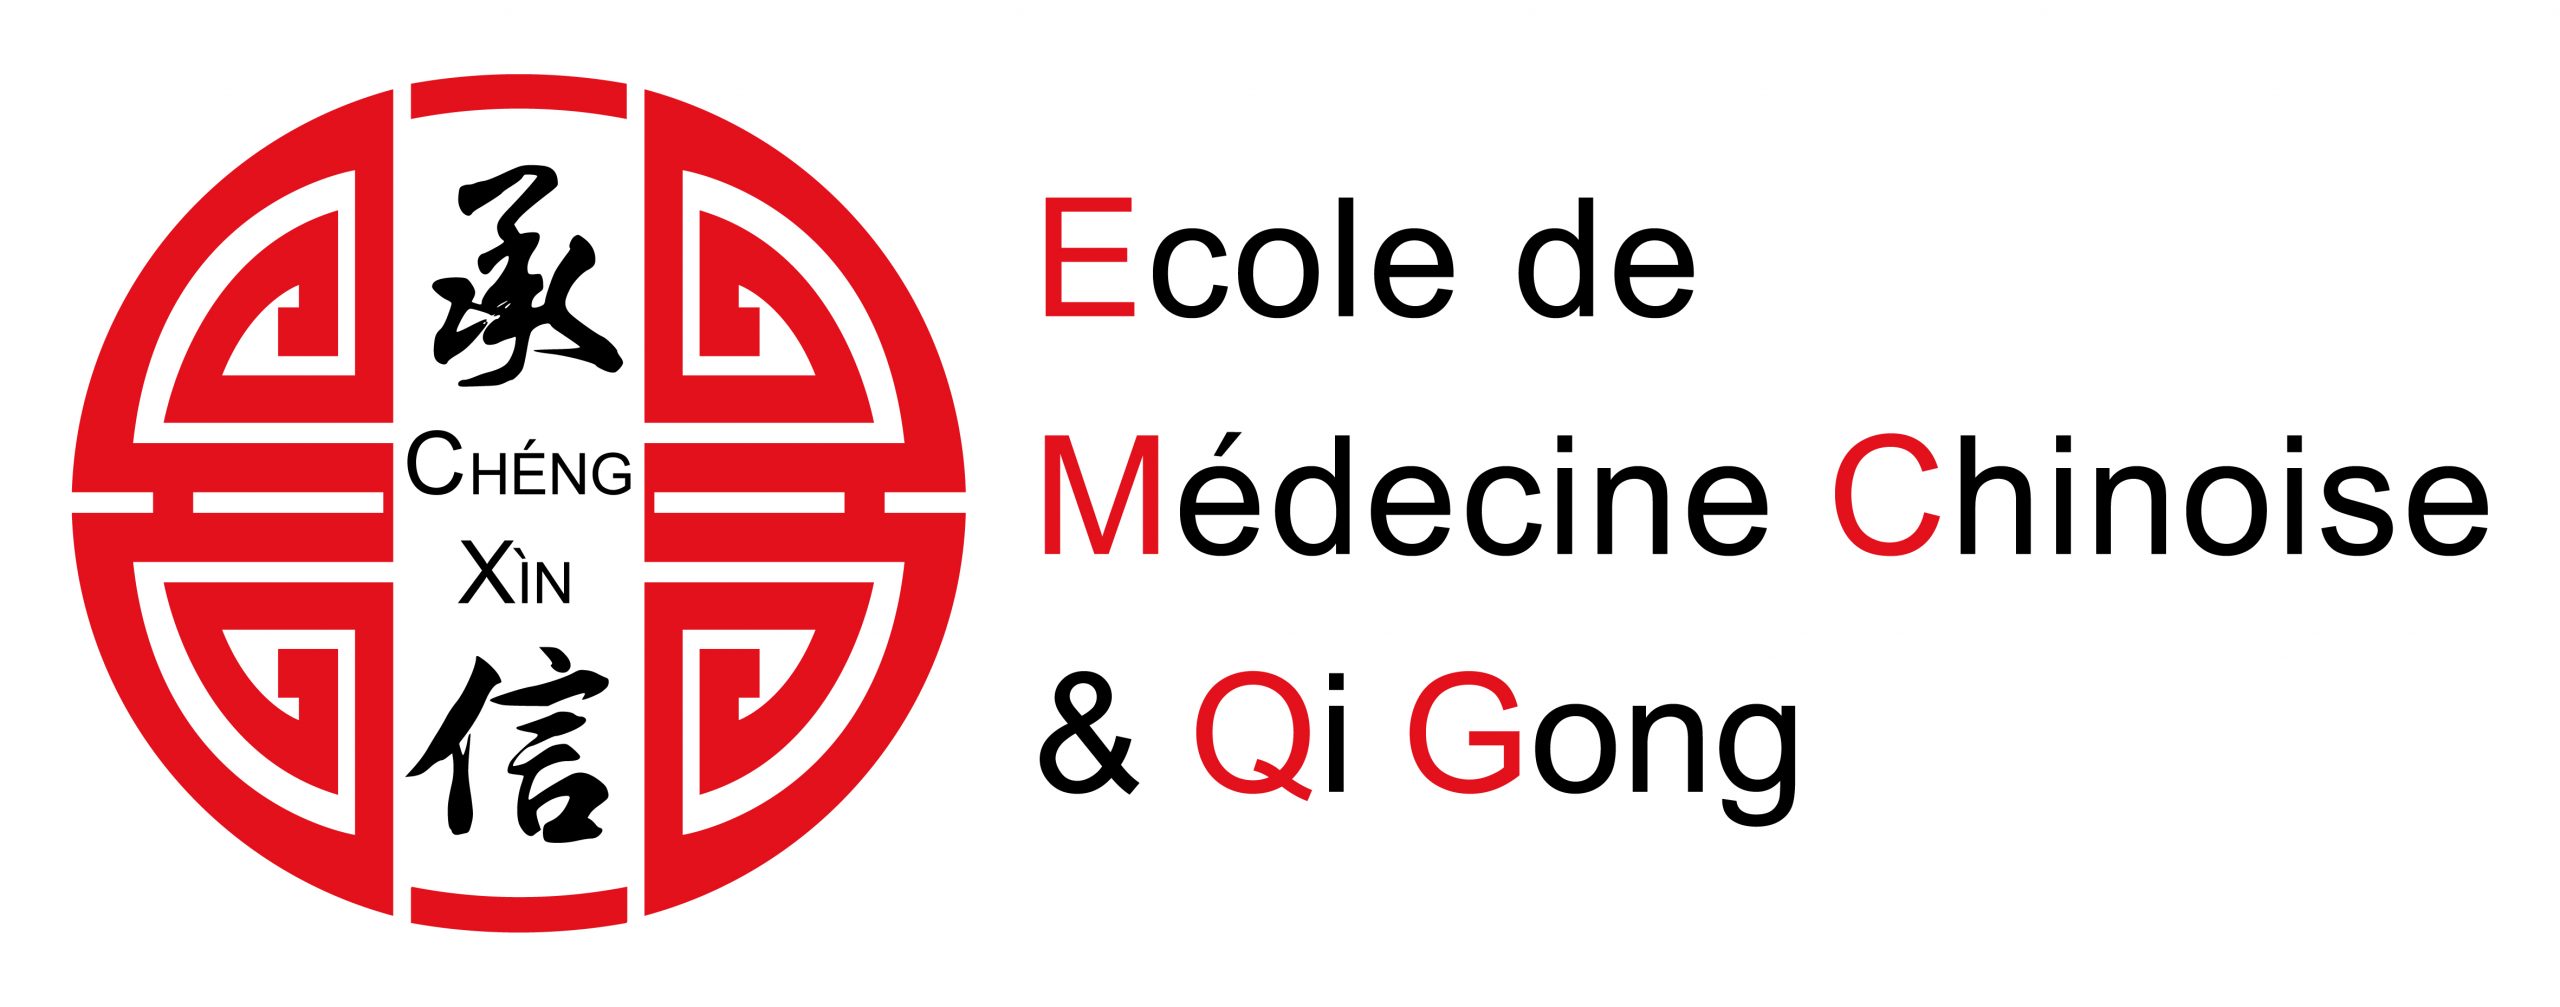 CHÉNG XÍN Ecole Médecine Chinoise et Qi Gong